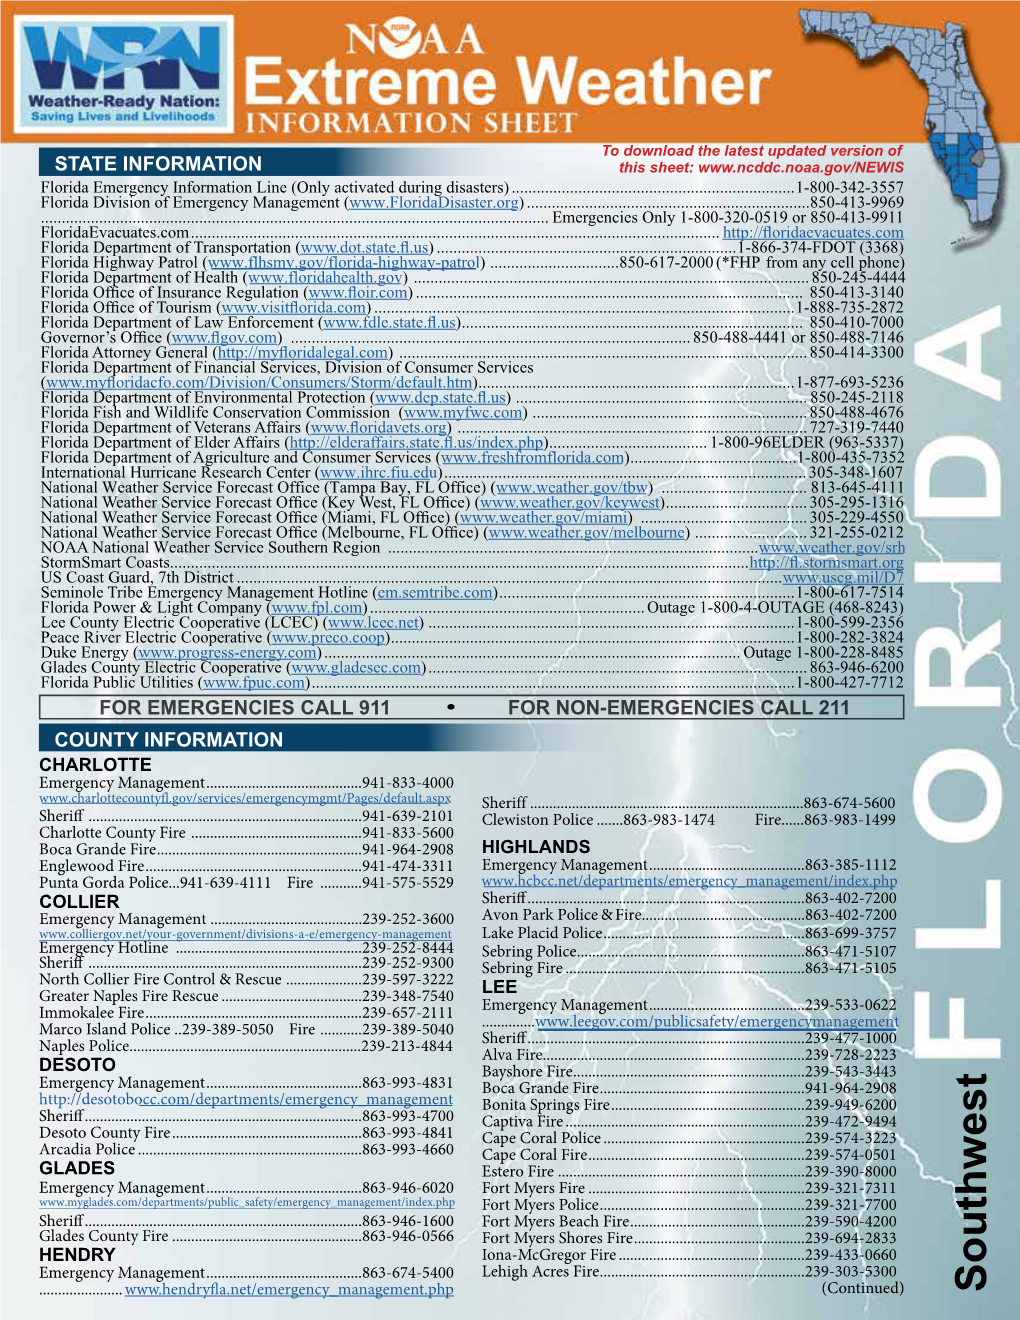 NOAA Extreme Weather Information Sheet Florida Southwest